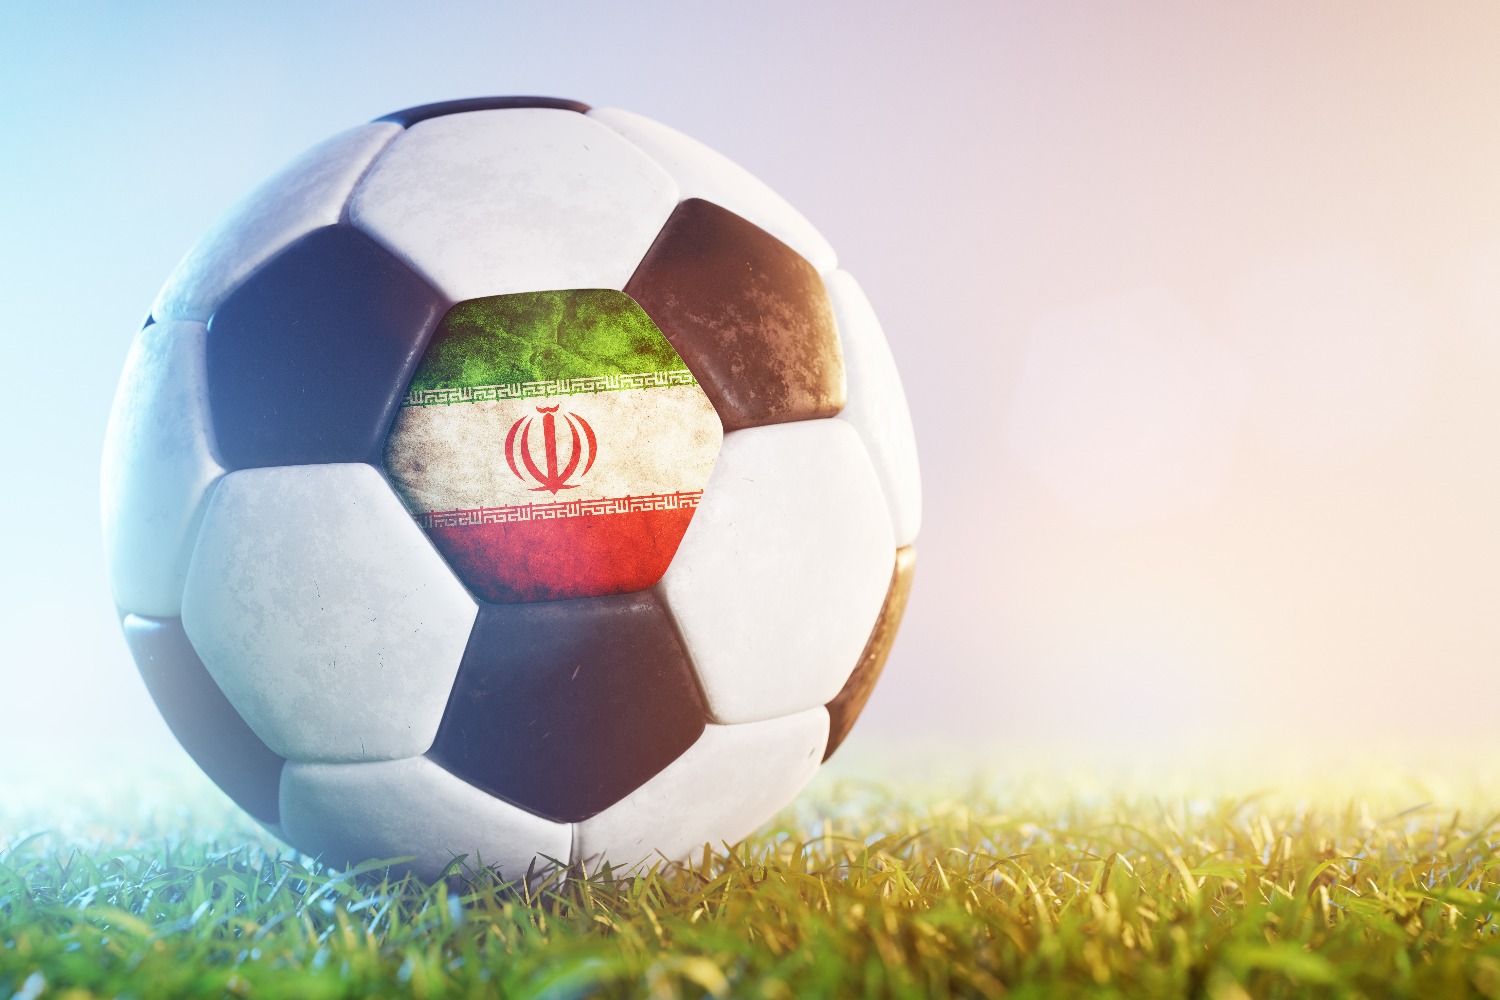 В Иране обвинили в проигрыше сборной Ирана «Израиль, саудитов и предателей»